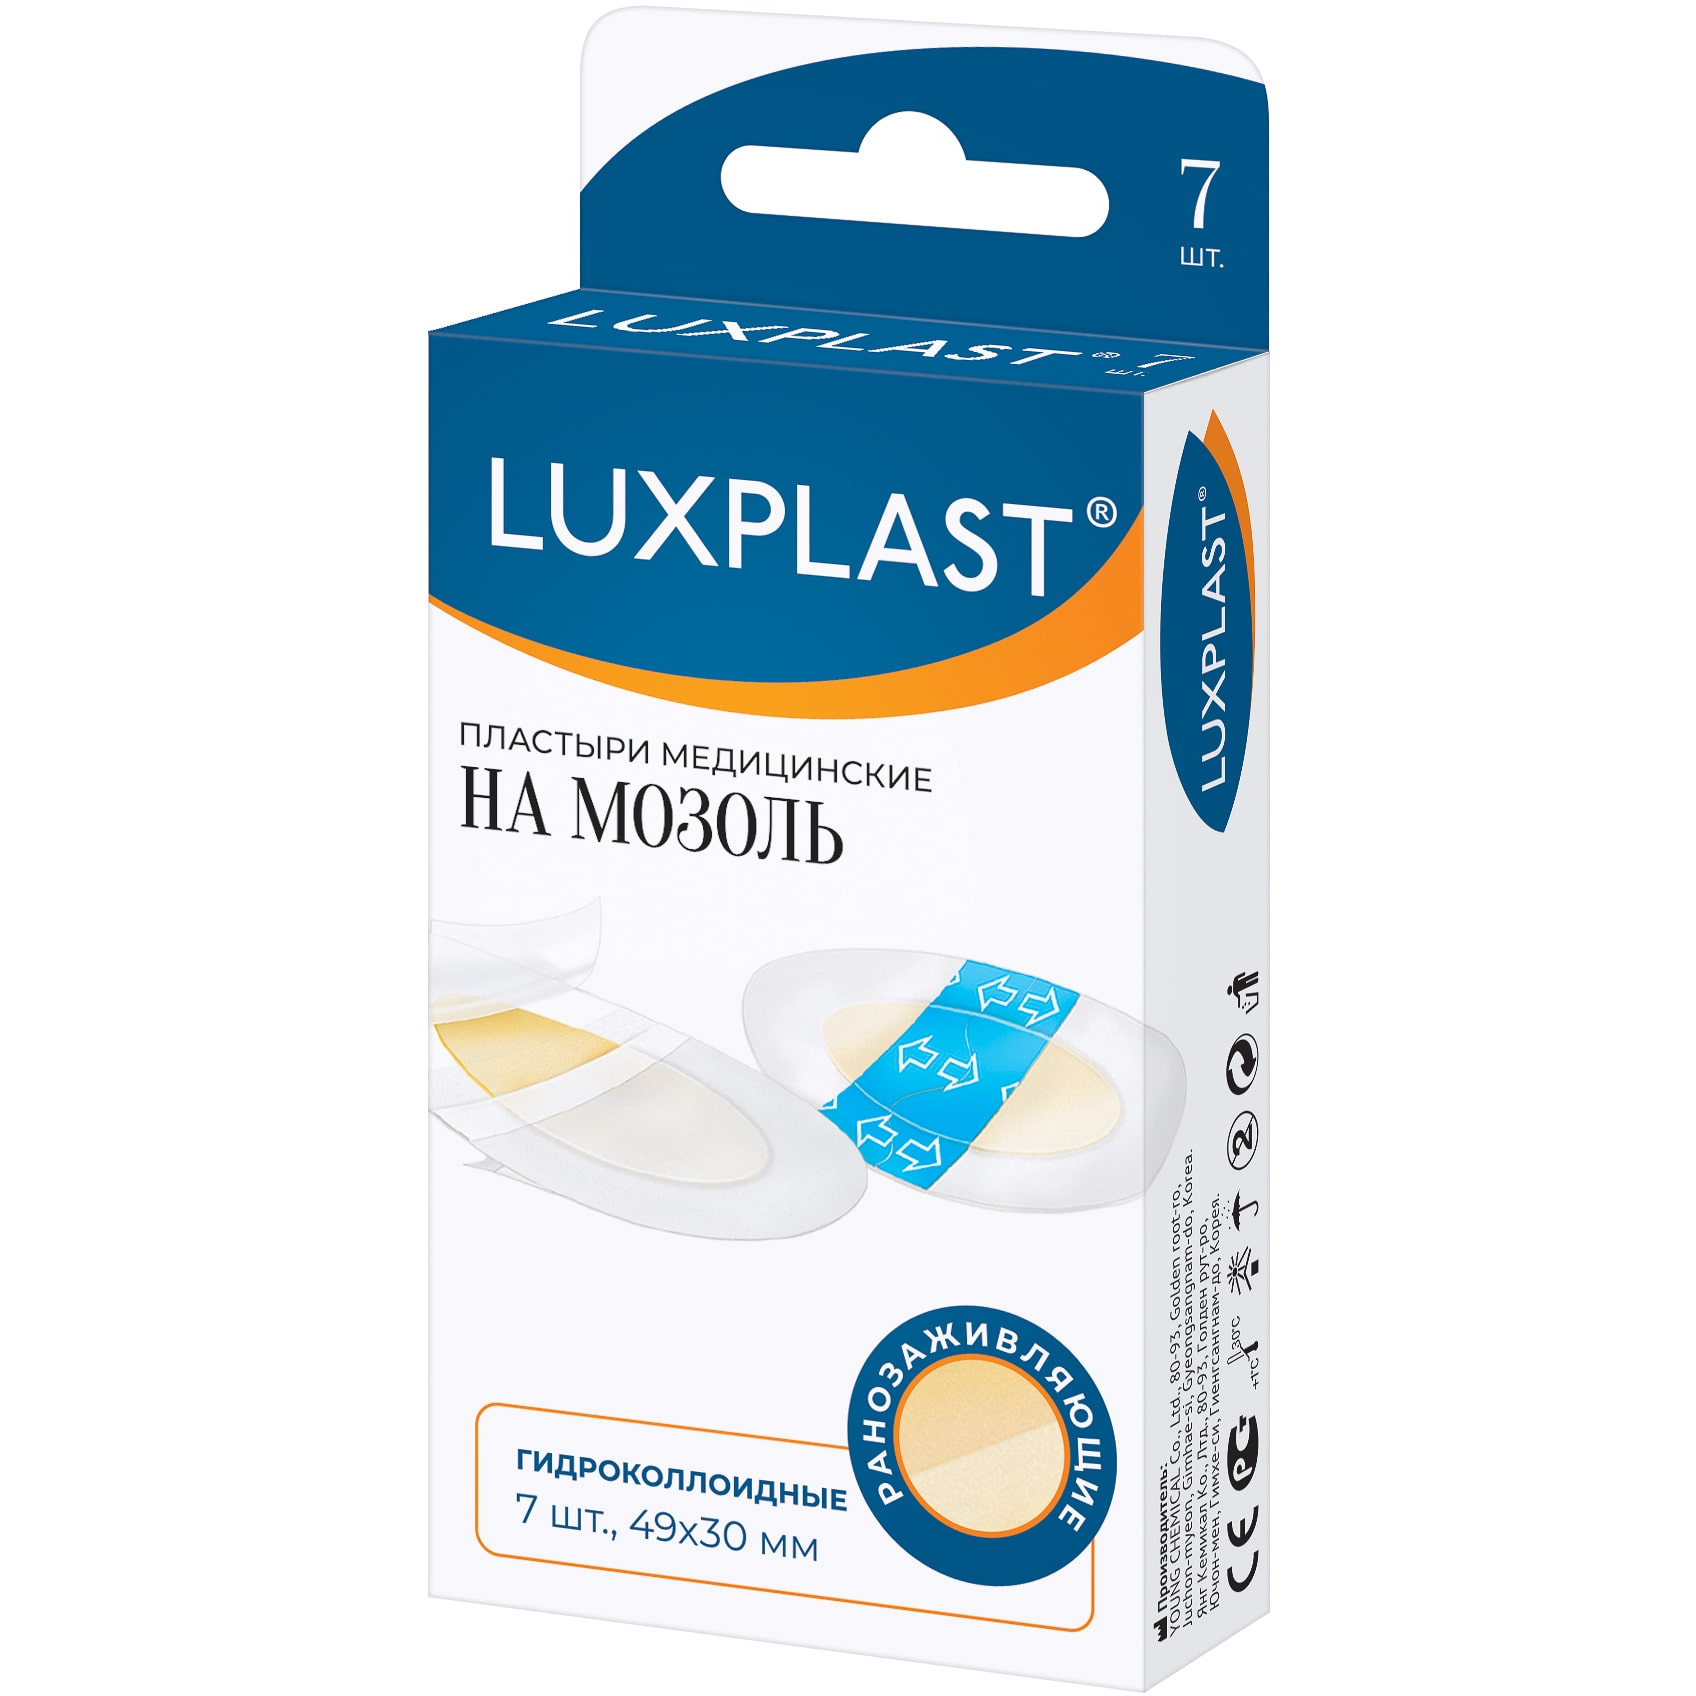 Пластырь Luxplast медицинский гидроколлоидный на мозоль 7 шт, цвет белый